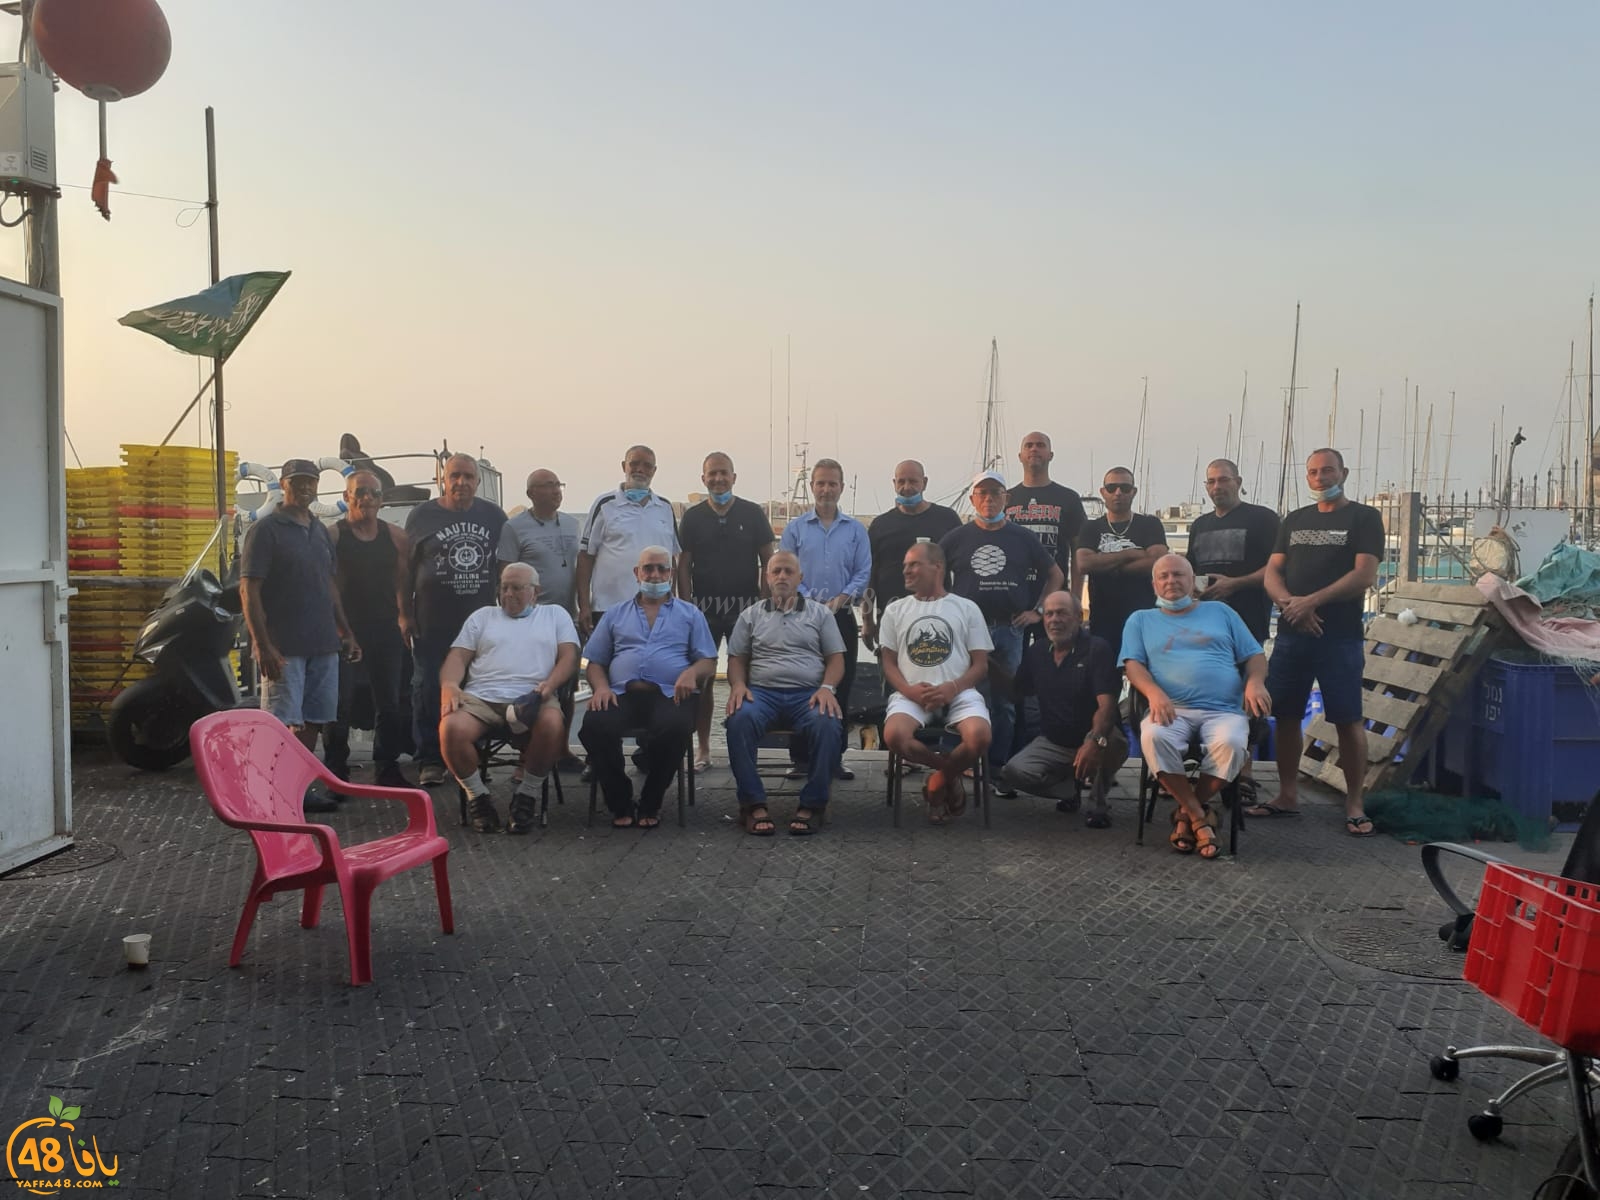  لقاء يجمع صيادي ميناء يافا من كافة الأديان بمبادرة جمعية مرساة يافا 